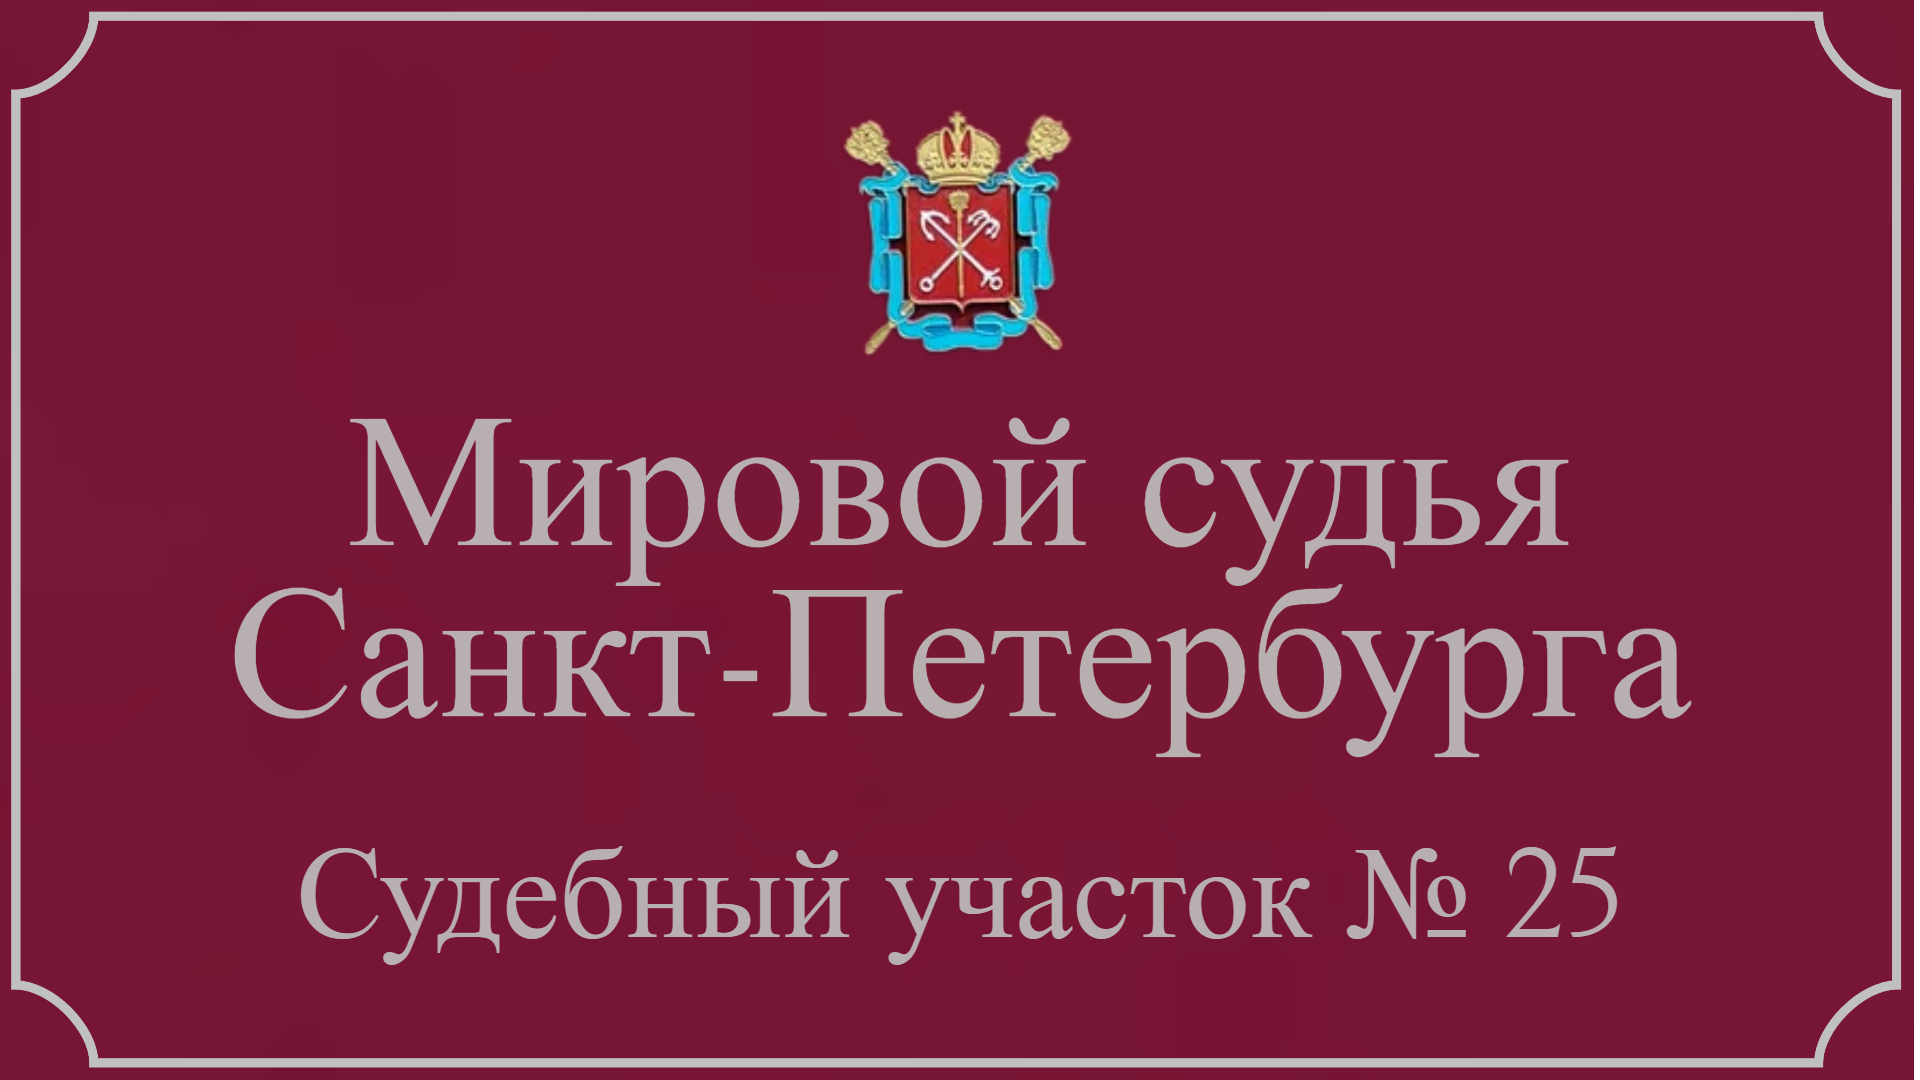 Информация по 25 судебному участку в Санкт-Петербурге.